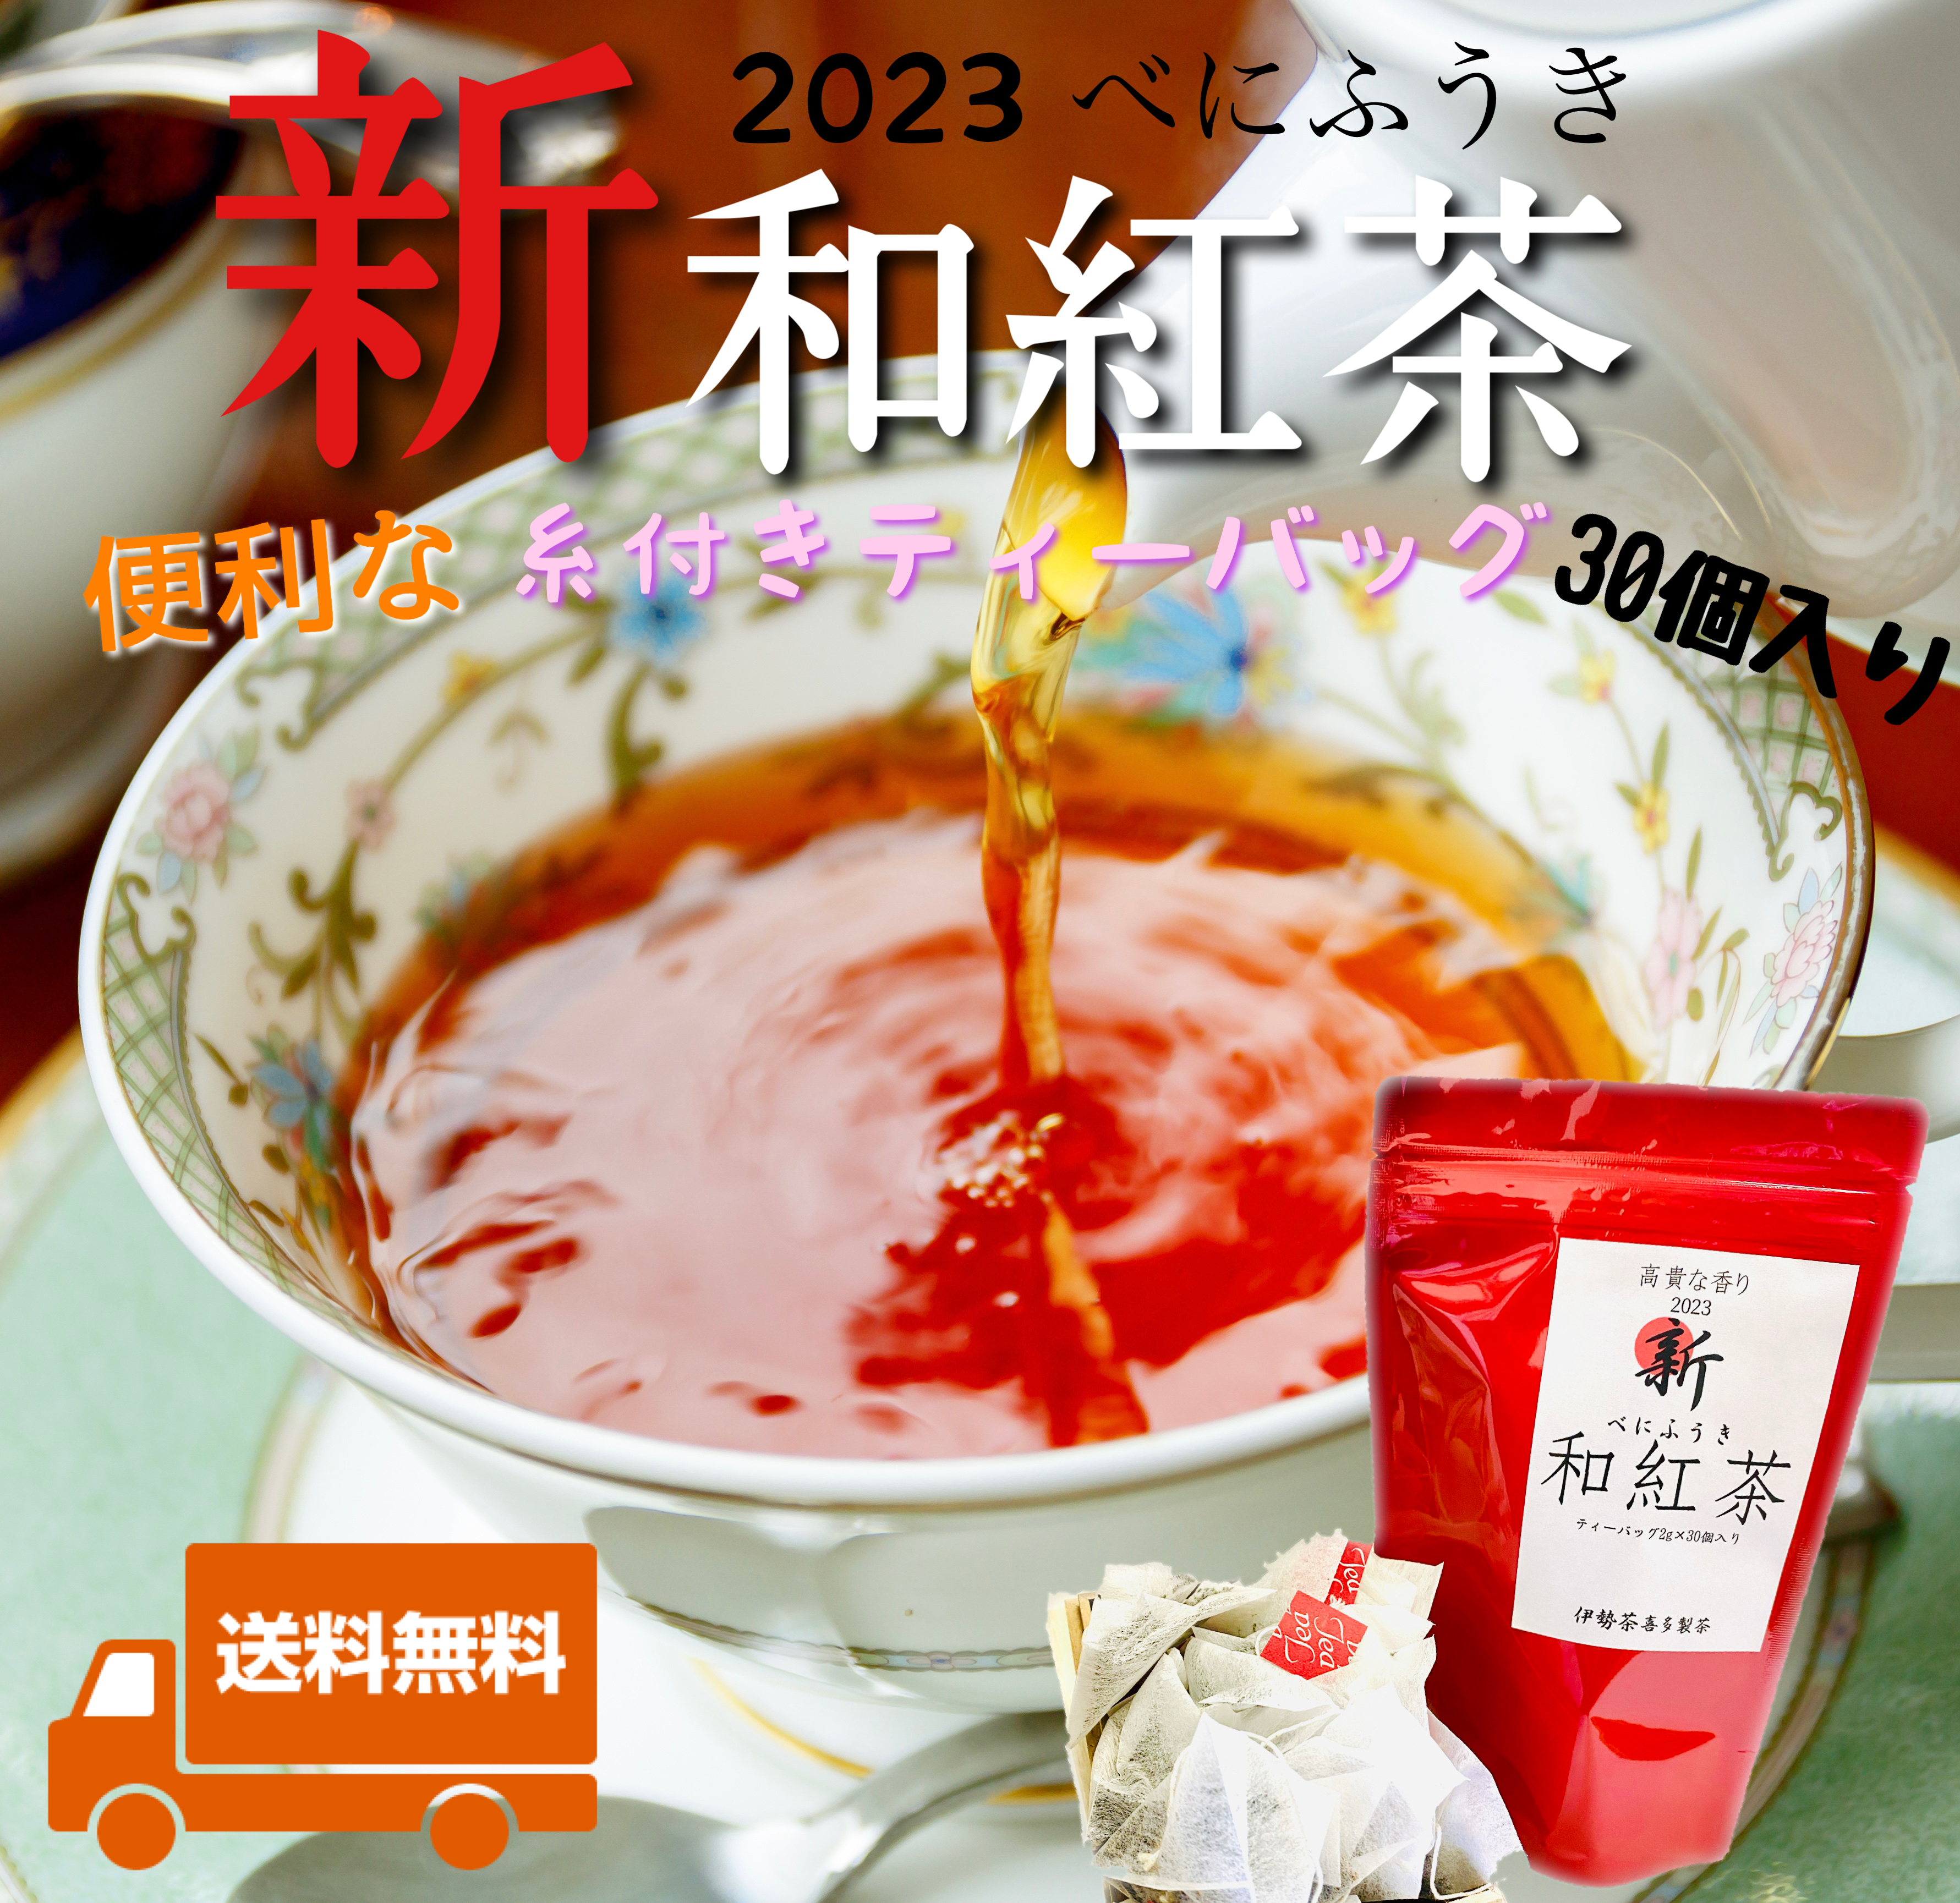 全国第3位のお茶】2023新・和紅茶 ティーバッグ2g×30個入り 送料